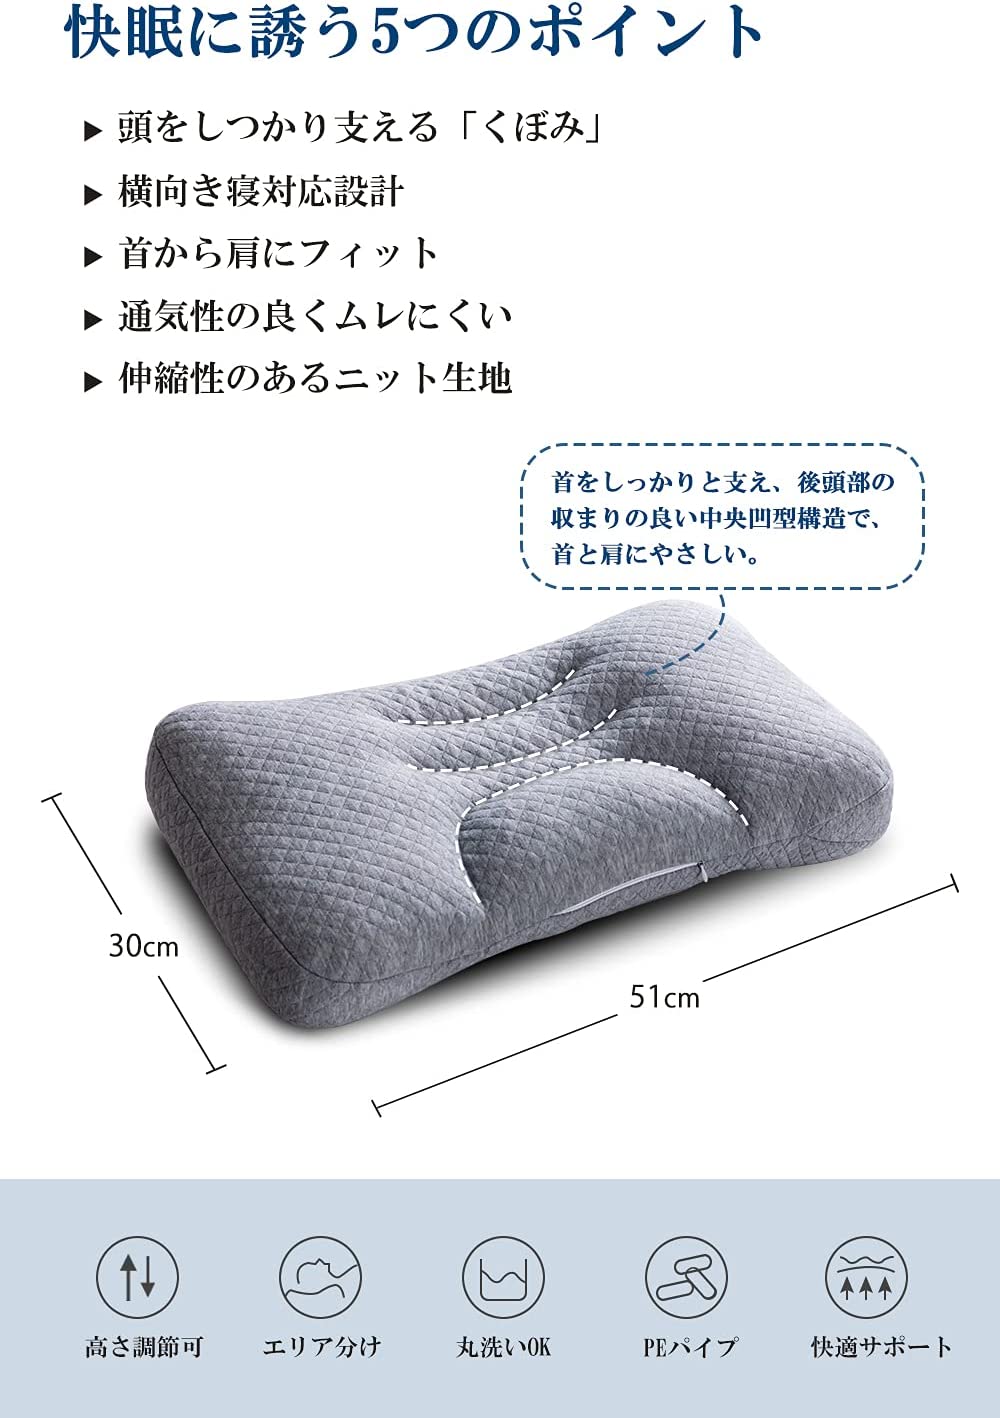 全ての パイプ枕 枕 Atoursp 横向き対応 通気 快眠枕 首肩フィット ホース枕 ネックピロー 高さ調整可能 安眠枕 肩こりまくら 丸洗い可能 枕 